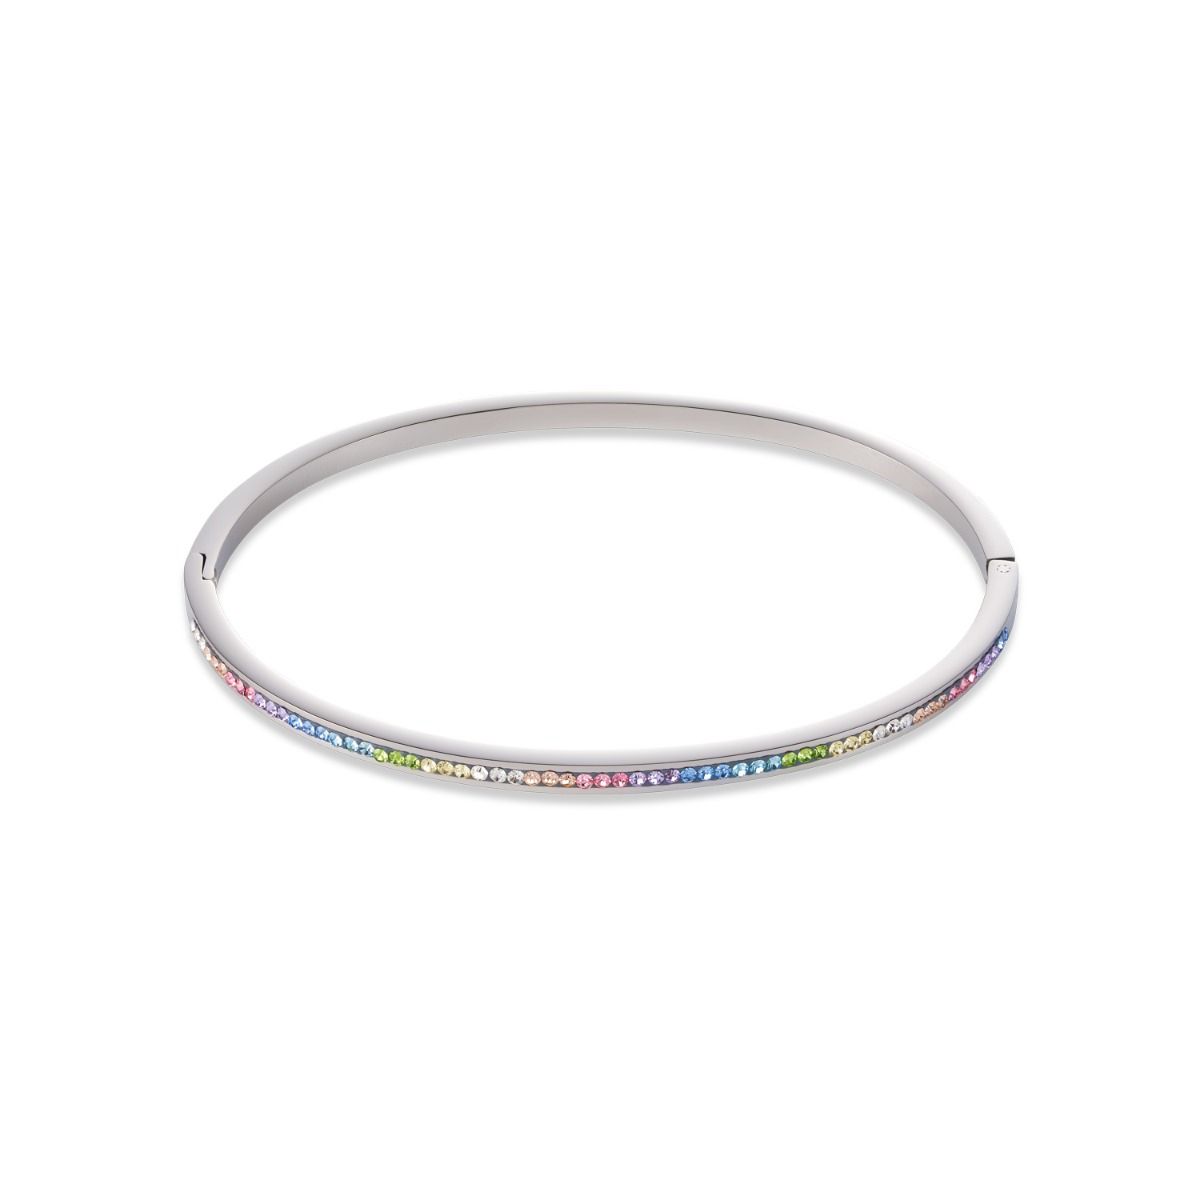 Buy Coeur De Lion Pastel Rainbow Crystal Bangle - Silver Online